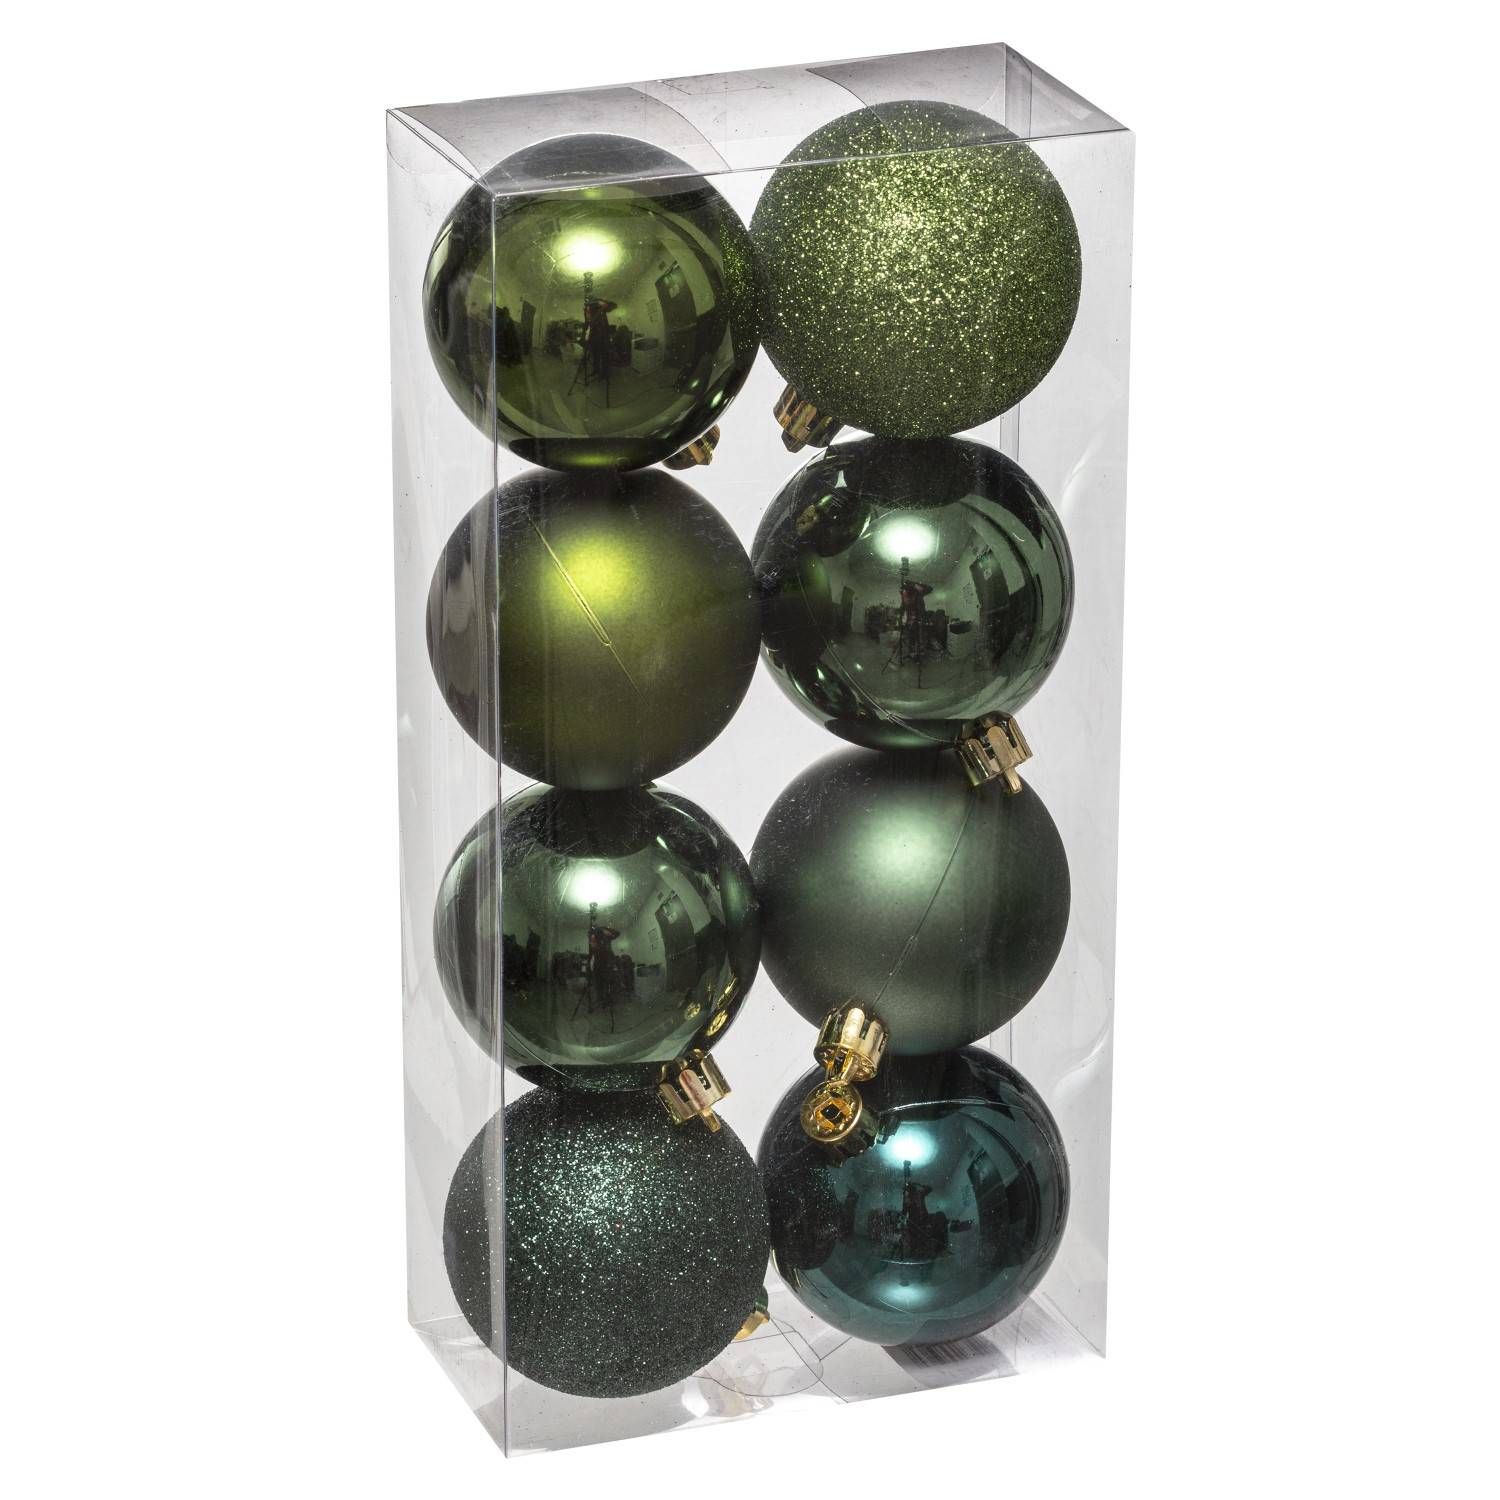 Fééric Lights and Christmas Vánoční koule, sada 8 kusů, zelená barva, 7 cm - EMAKO.CZ s.r.o.